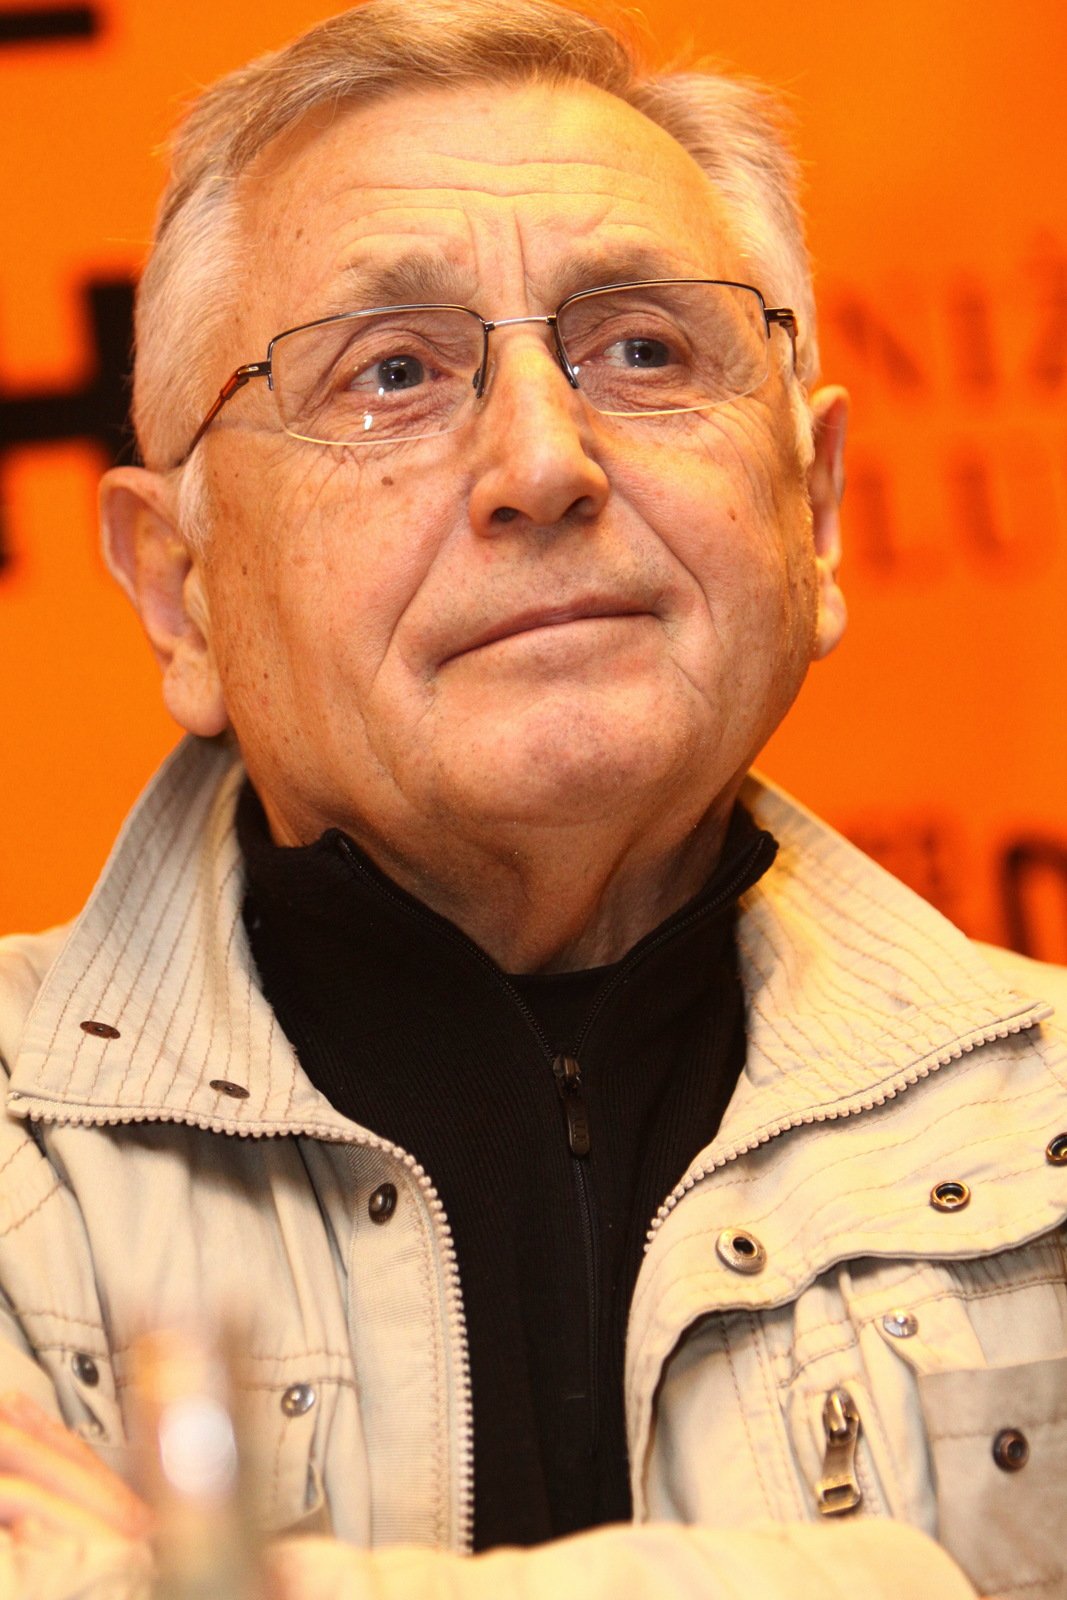 Ve věku 82 let zemřel oscarový režisér Jiří Menzel.